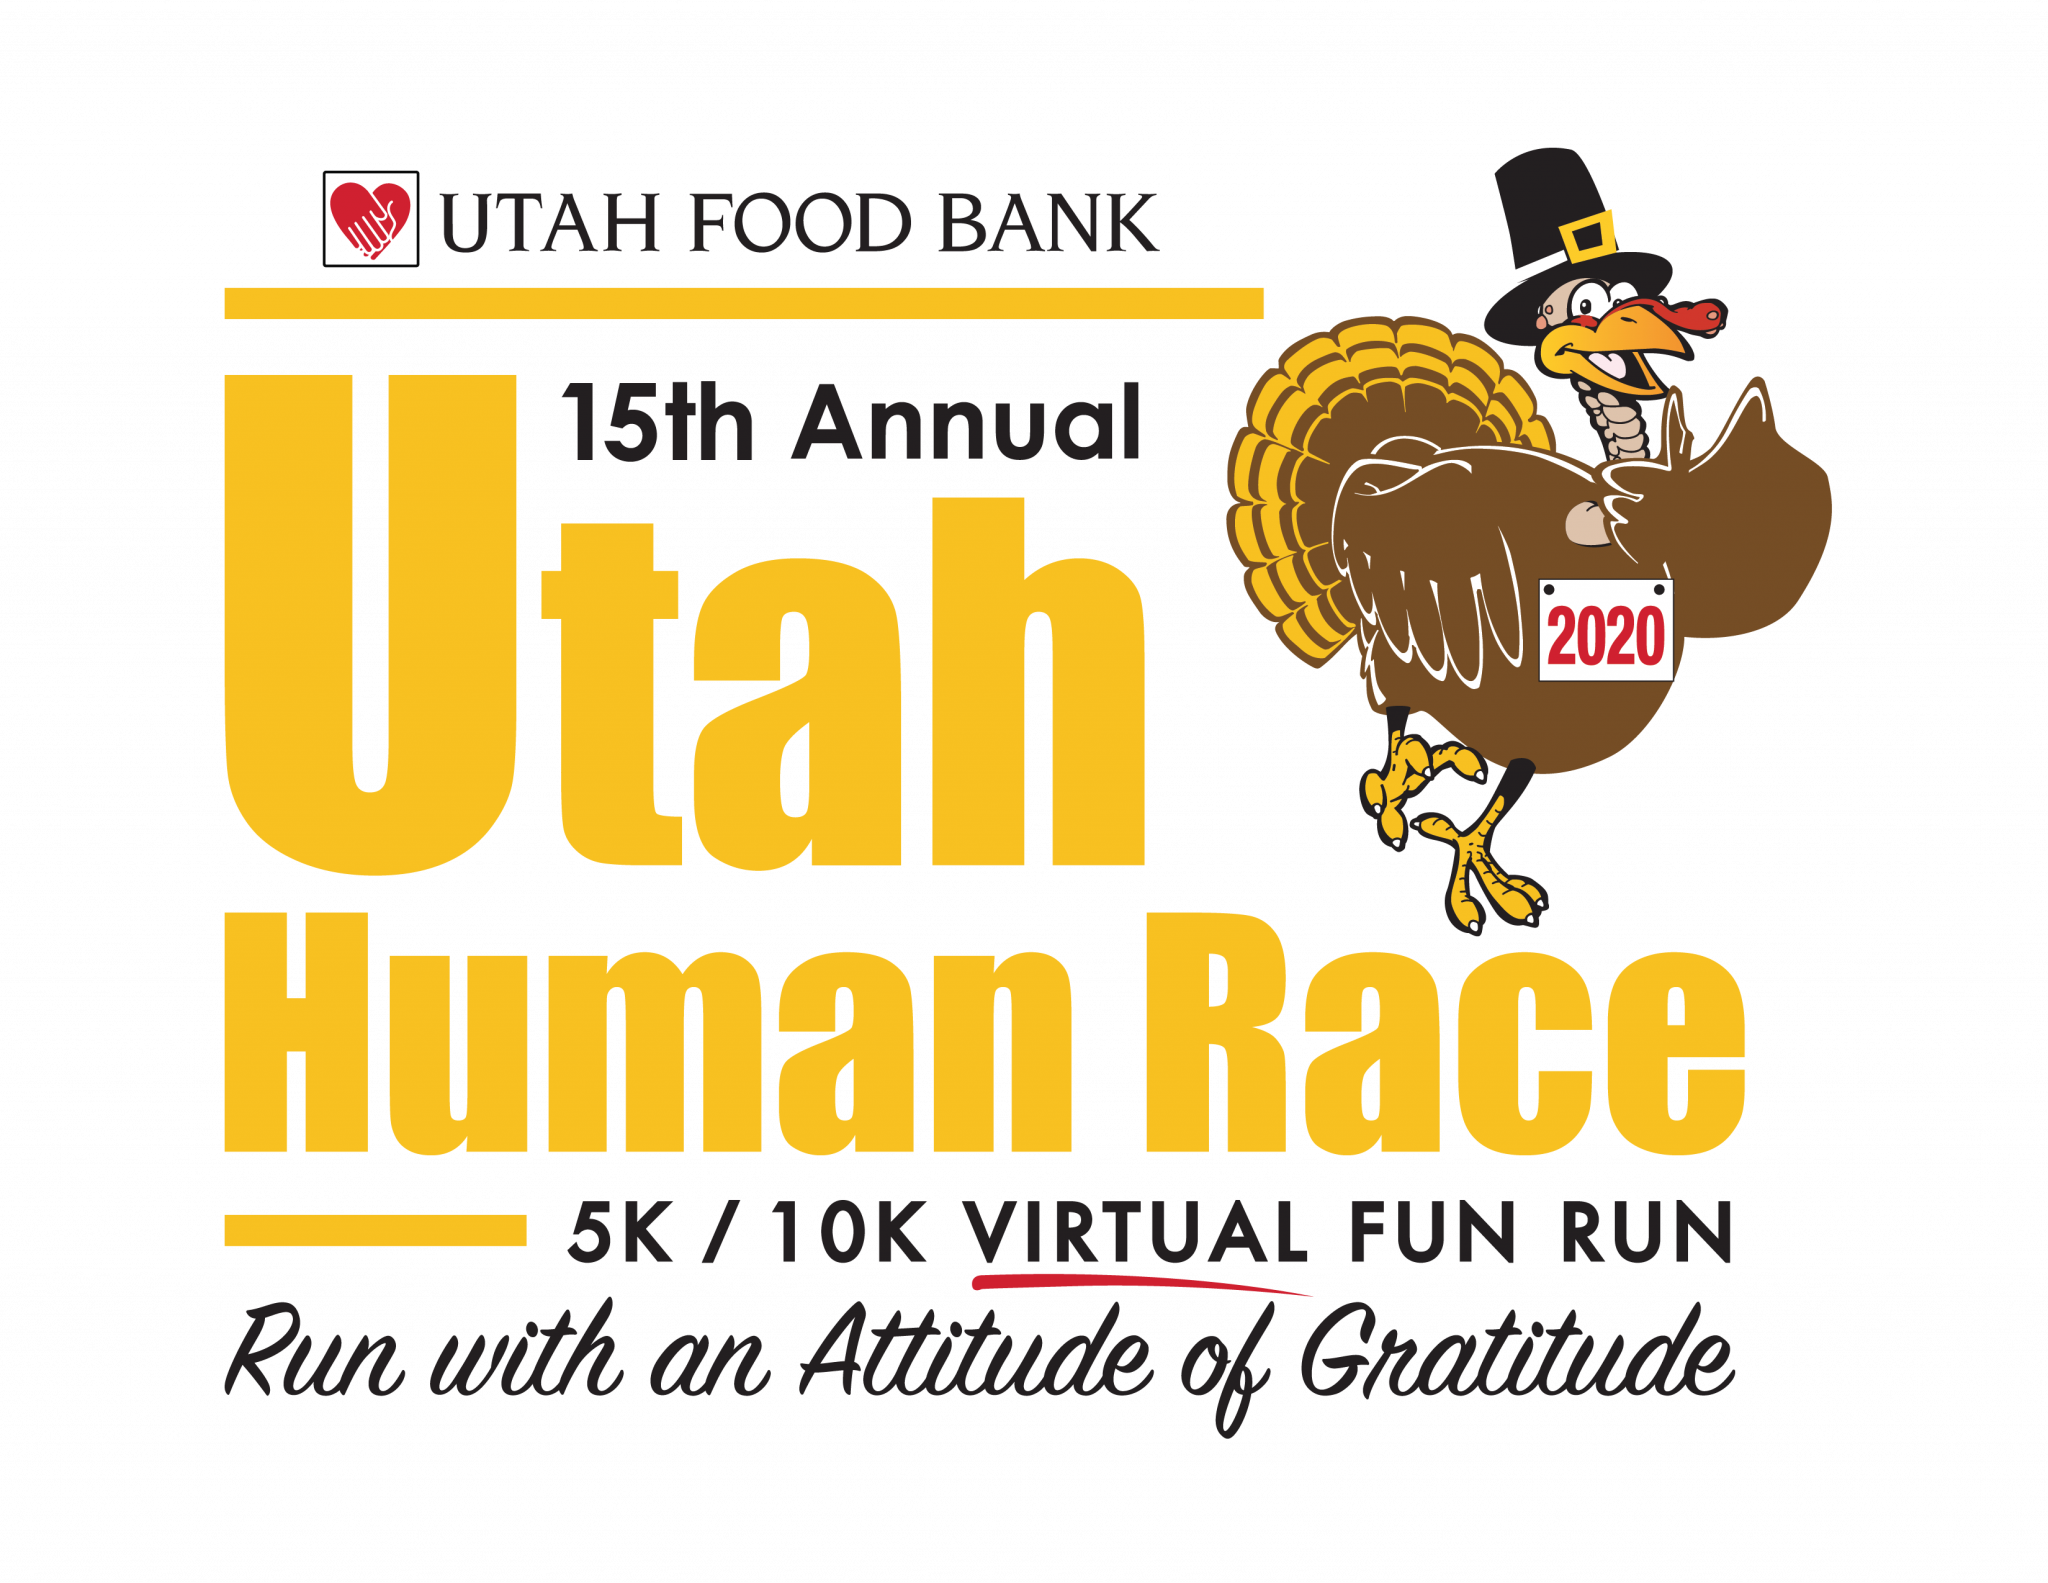 Utah Human Race Utah Food Bank